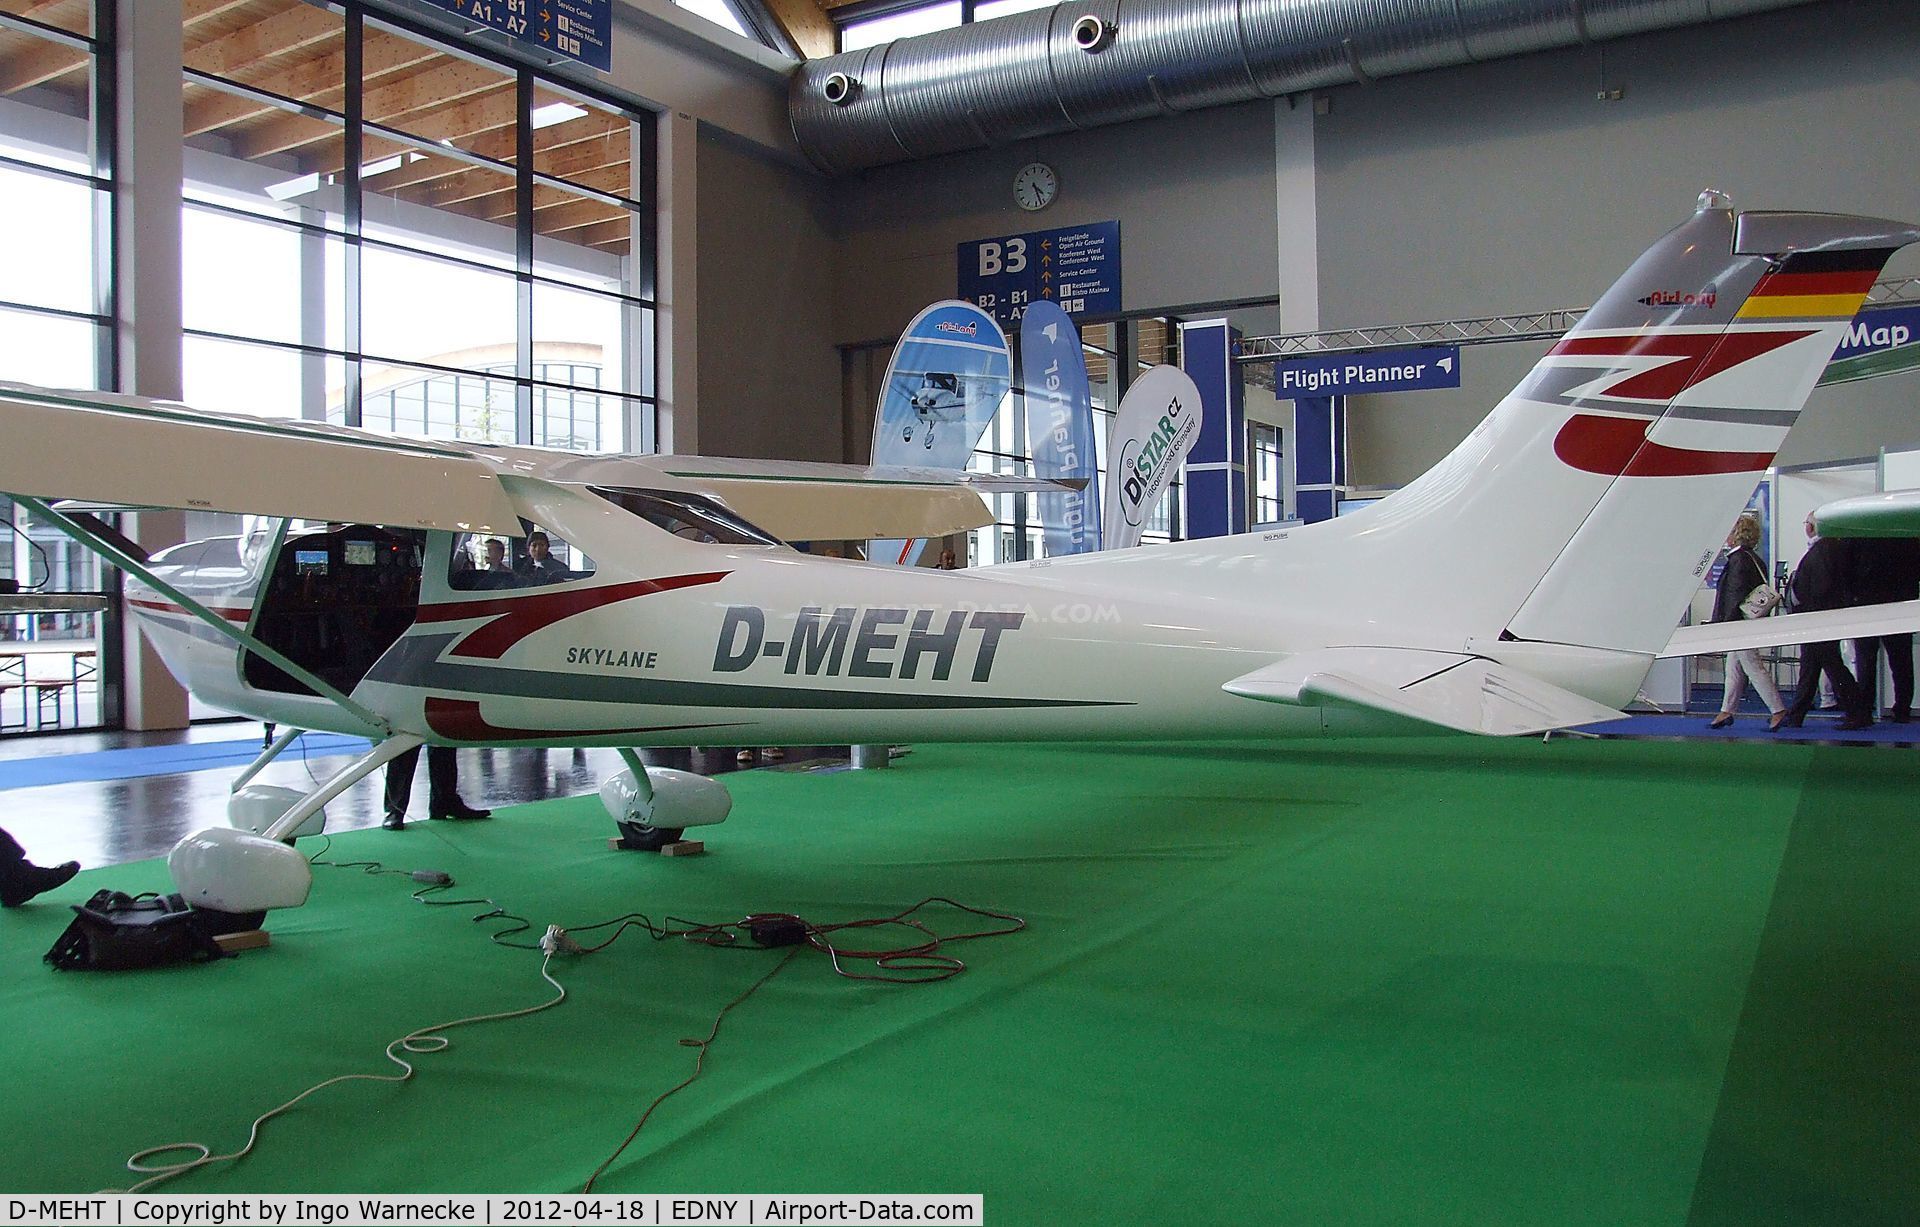 D-MEHT, AirLony Skylane C/N Not found D-MEHT, AirLony Skylane at the AERO 2012, Friedrichshafen